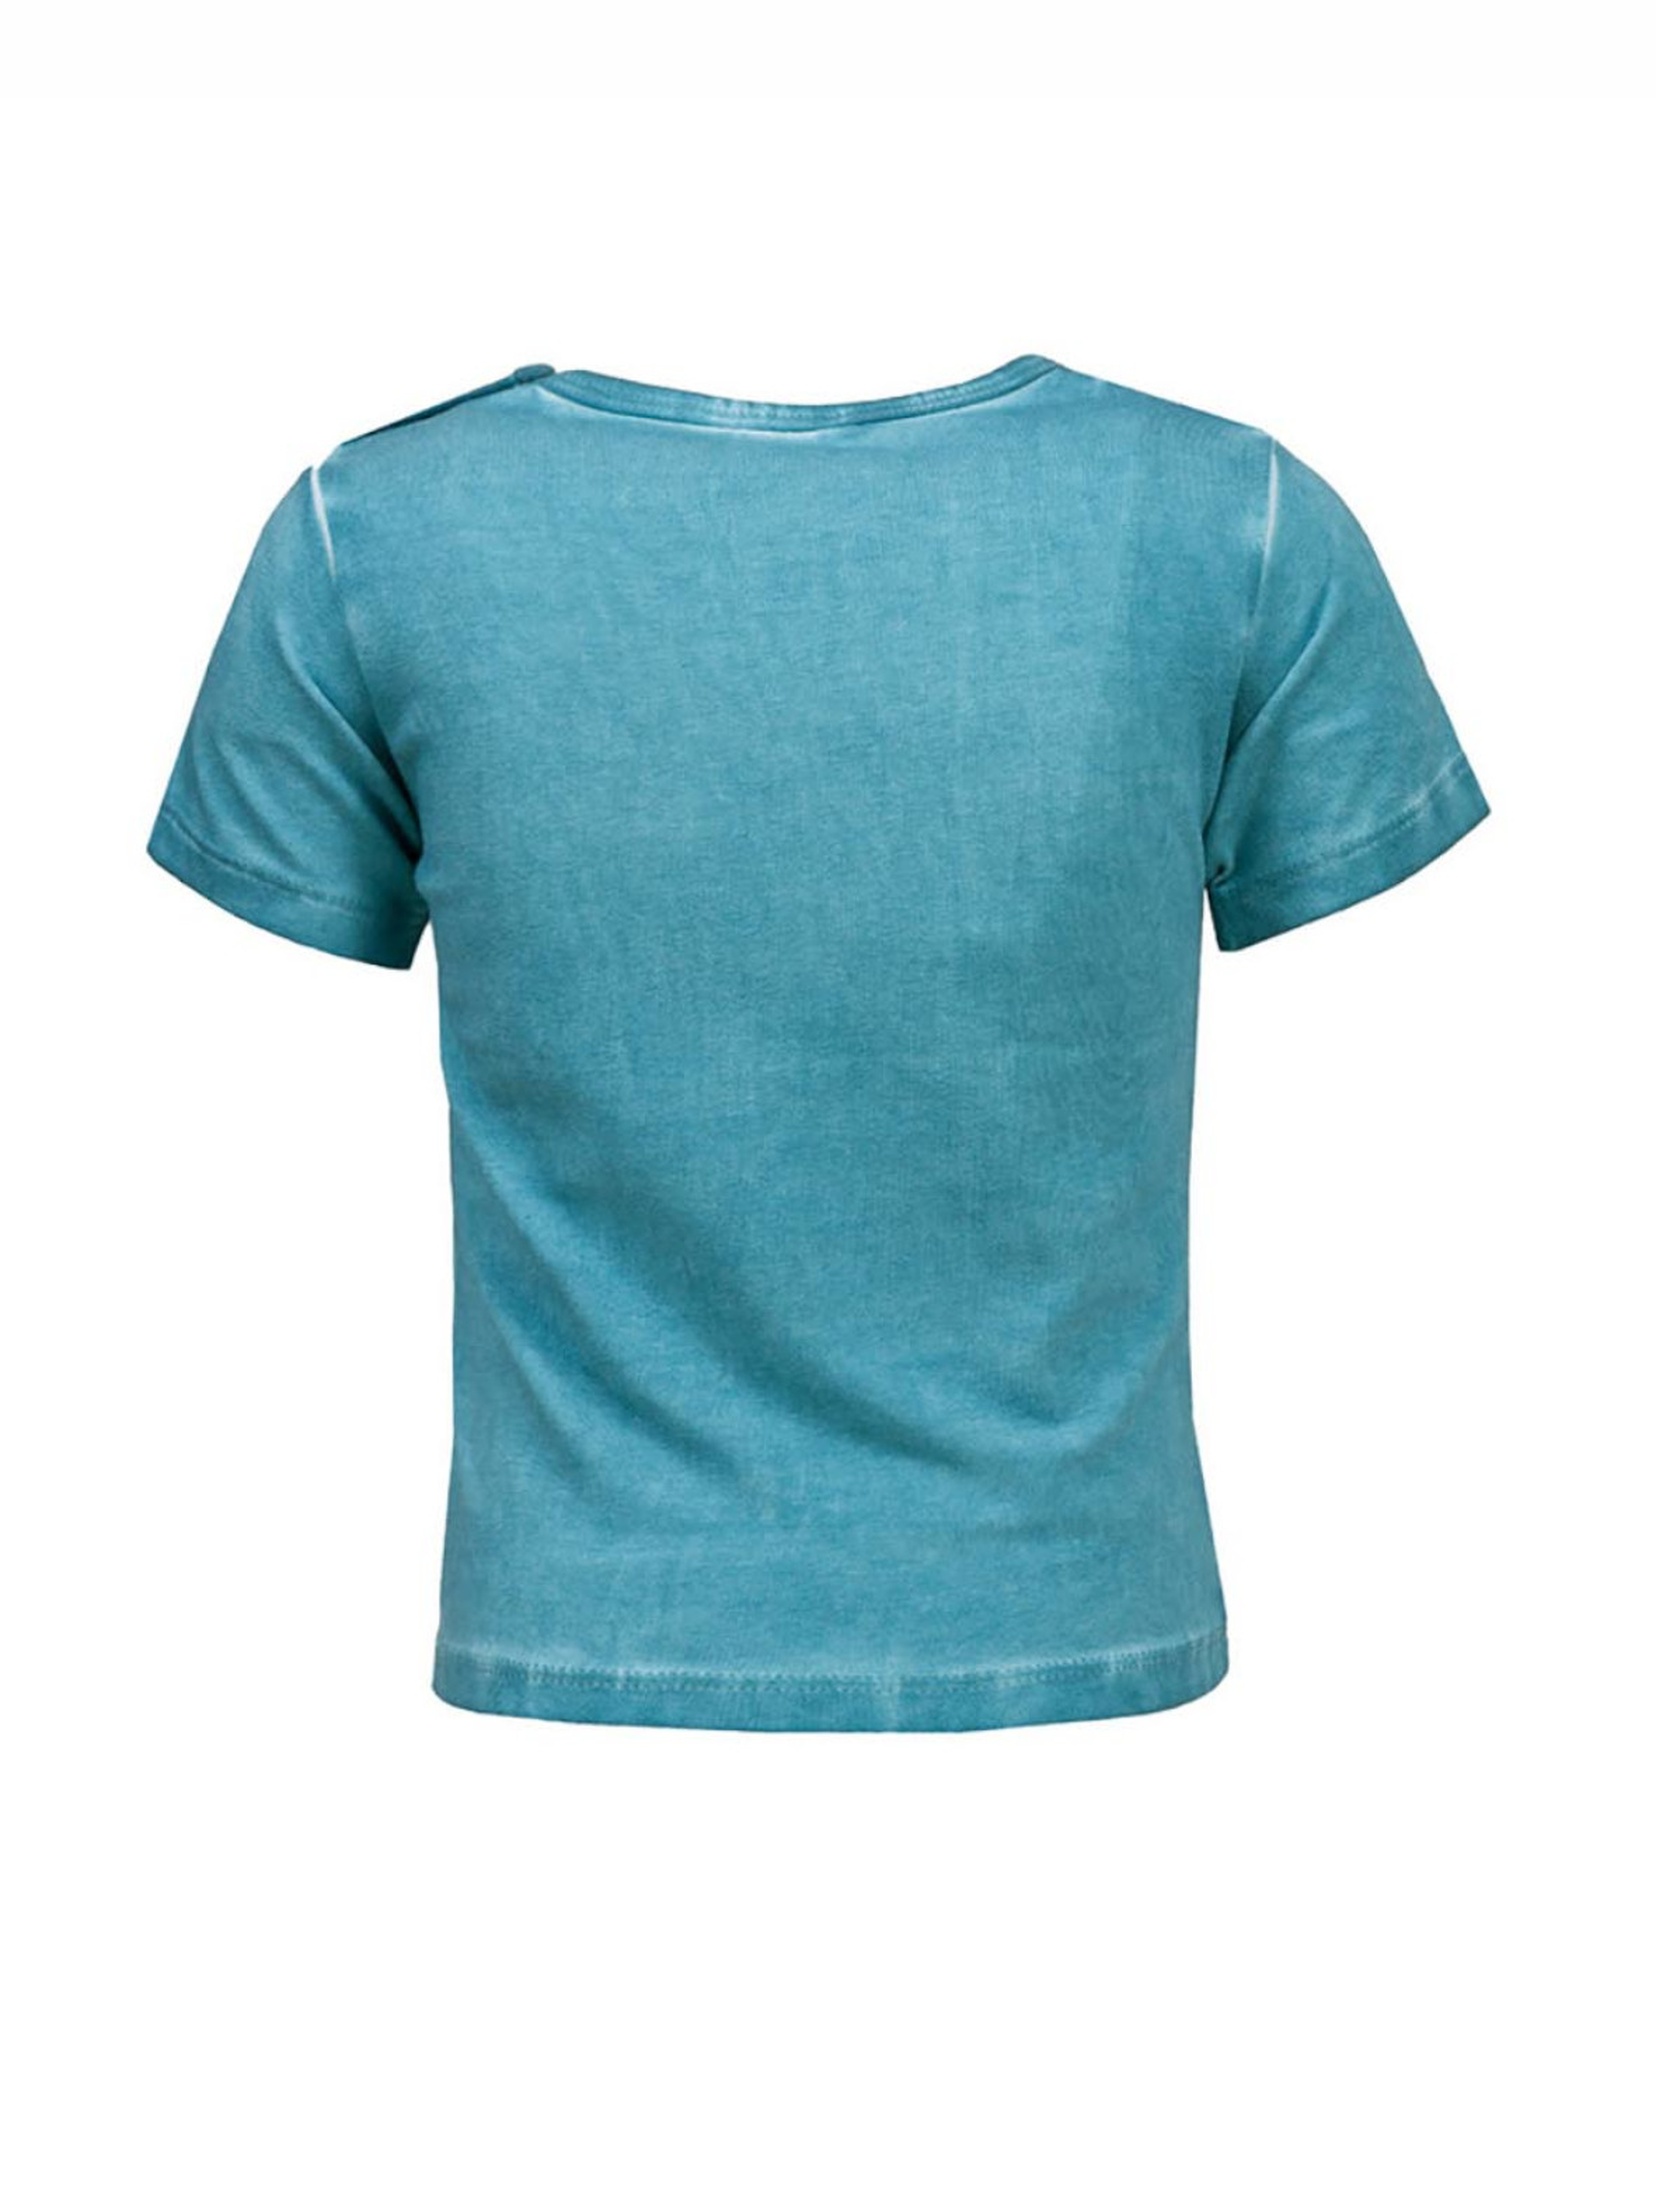 T-shirt chłopięcy, niebieski, Lief